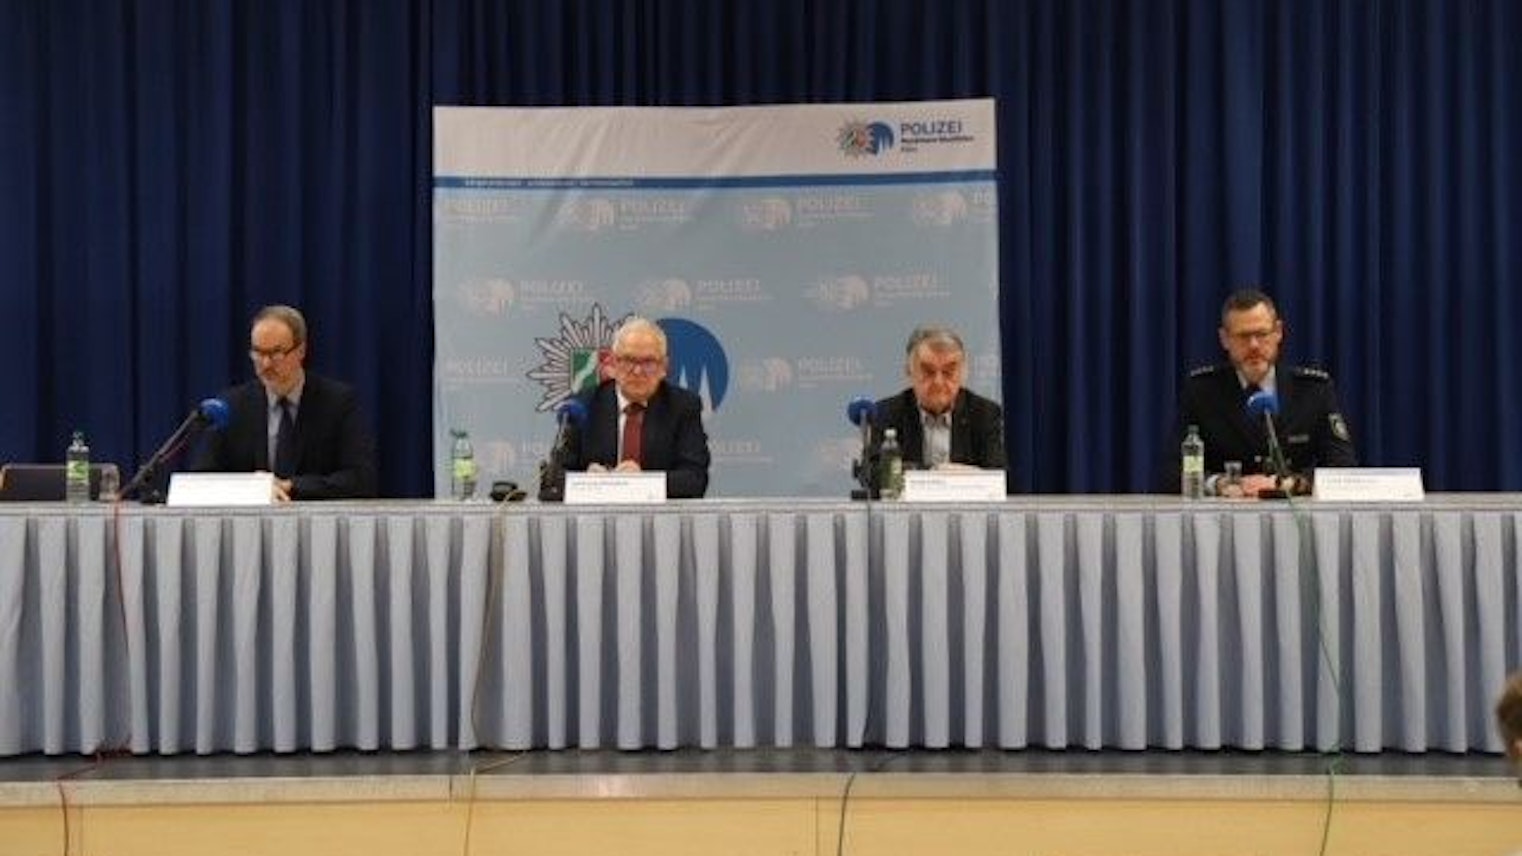 Herbert Reul äußerte sich auf der kurzfristig angesetzten Pressekonferenz am 31.12. zu den neuen Erkenntnissen bezüglich des geplanten Anschlags auf den Kölner Dom in der Silvesternacht.